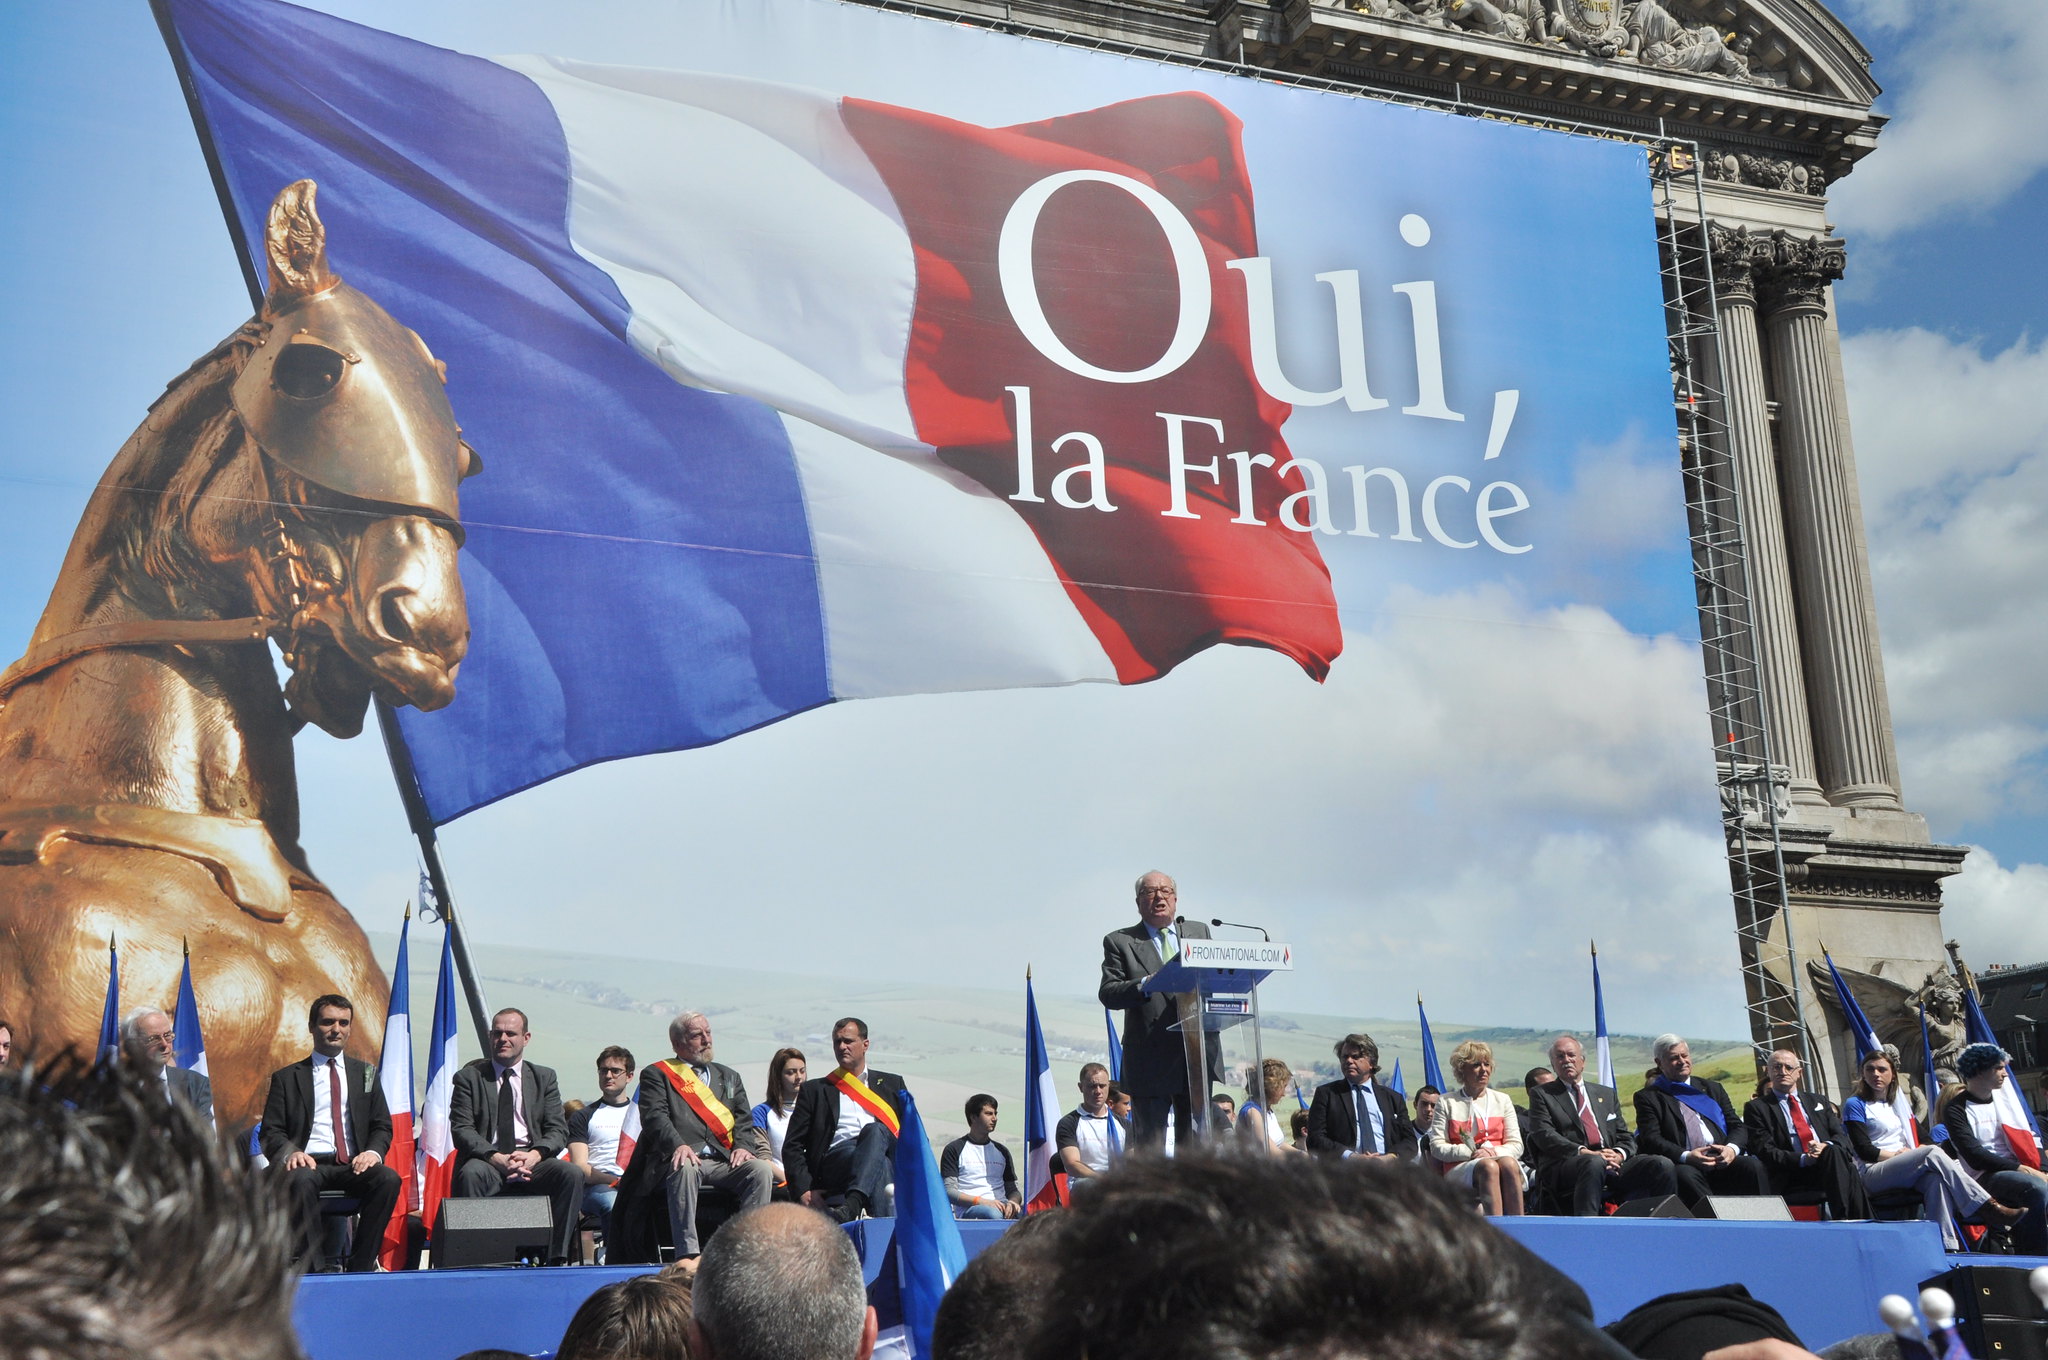 Jean-Marie Le Pen tijdens een bijeenkomst van het toenmalige Front National in Parijs, 1 mei 2012. © Blandine Le Cain via Flickr